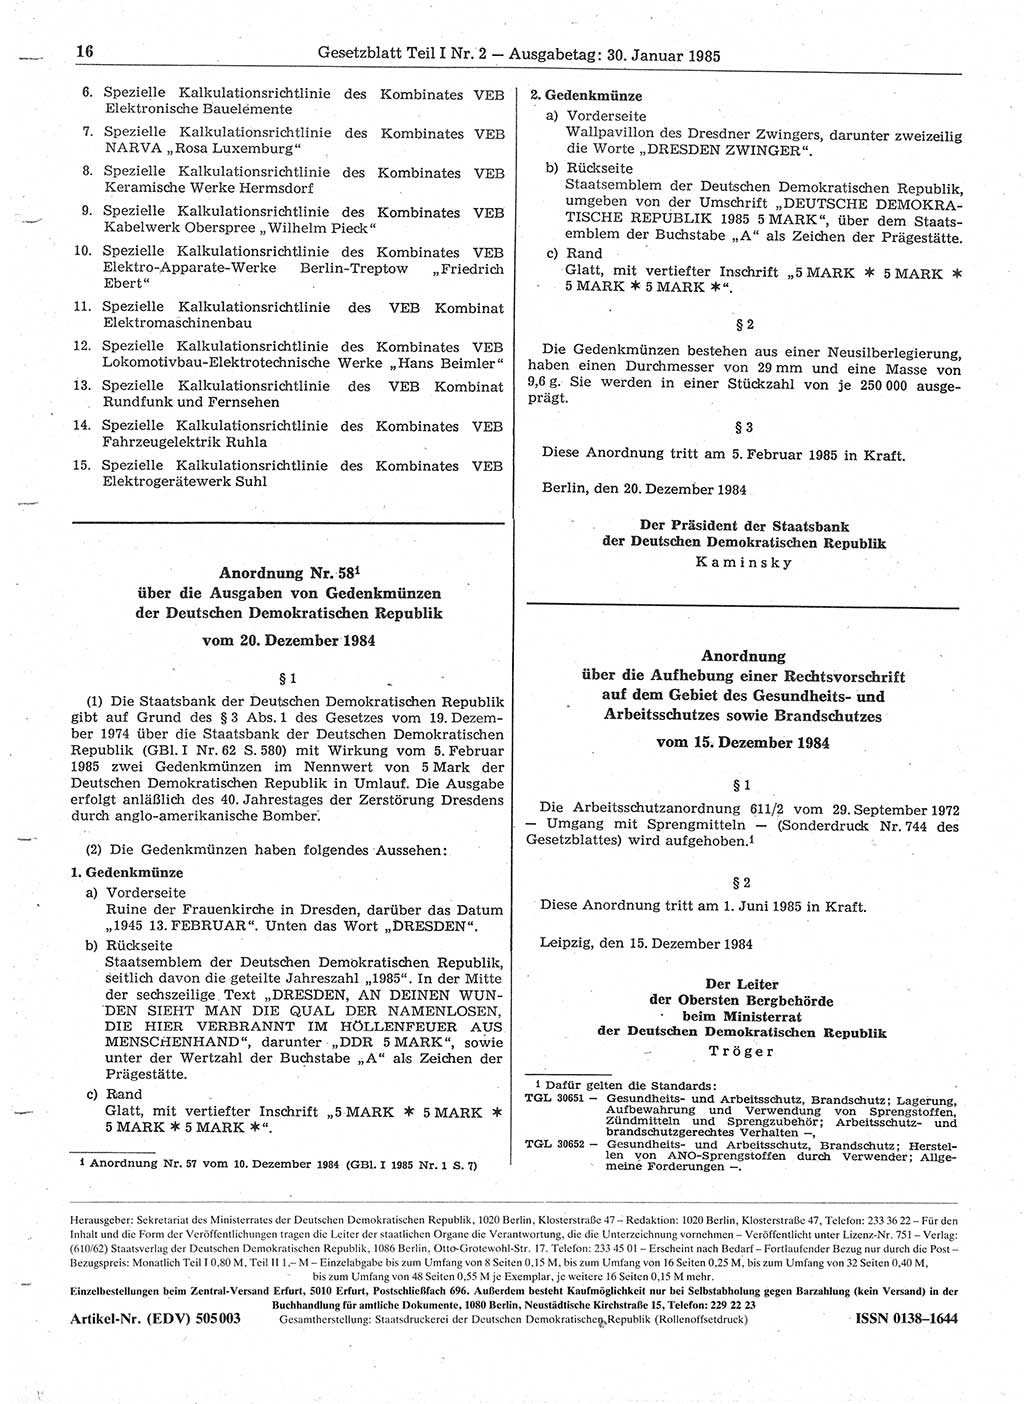 Gesetzblatt (GBl.) der Deutschen Demokratischen Republik (DDR) Teil Ⅰ 1985, Seite 16 (GBl. DDR Ⅰ 1985, S. 16)